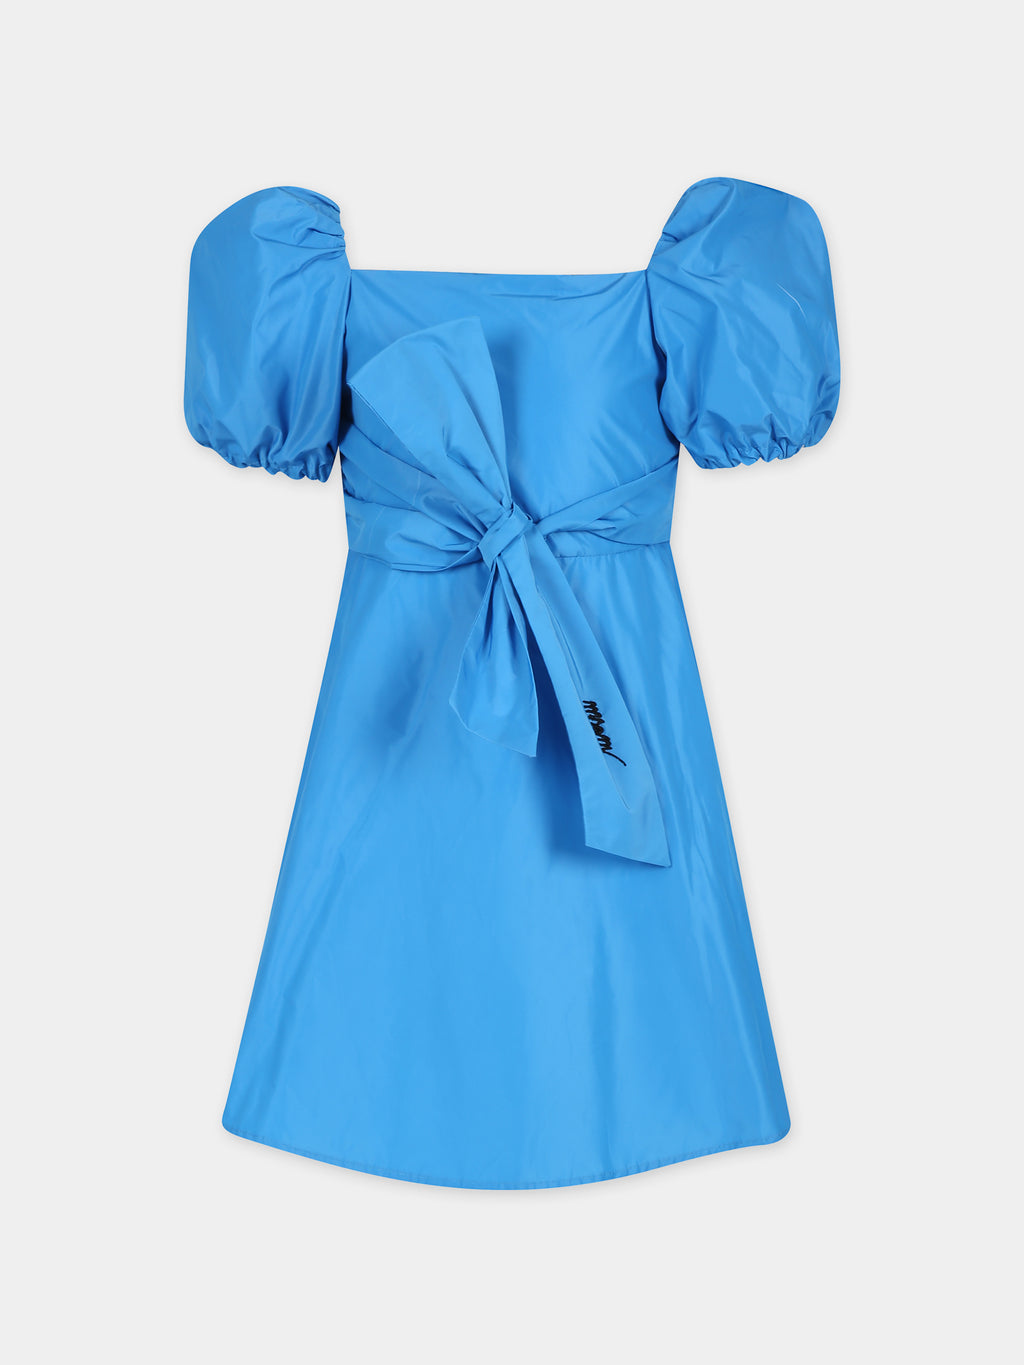 Light blue dress for girl with logo